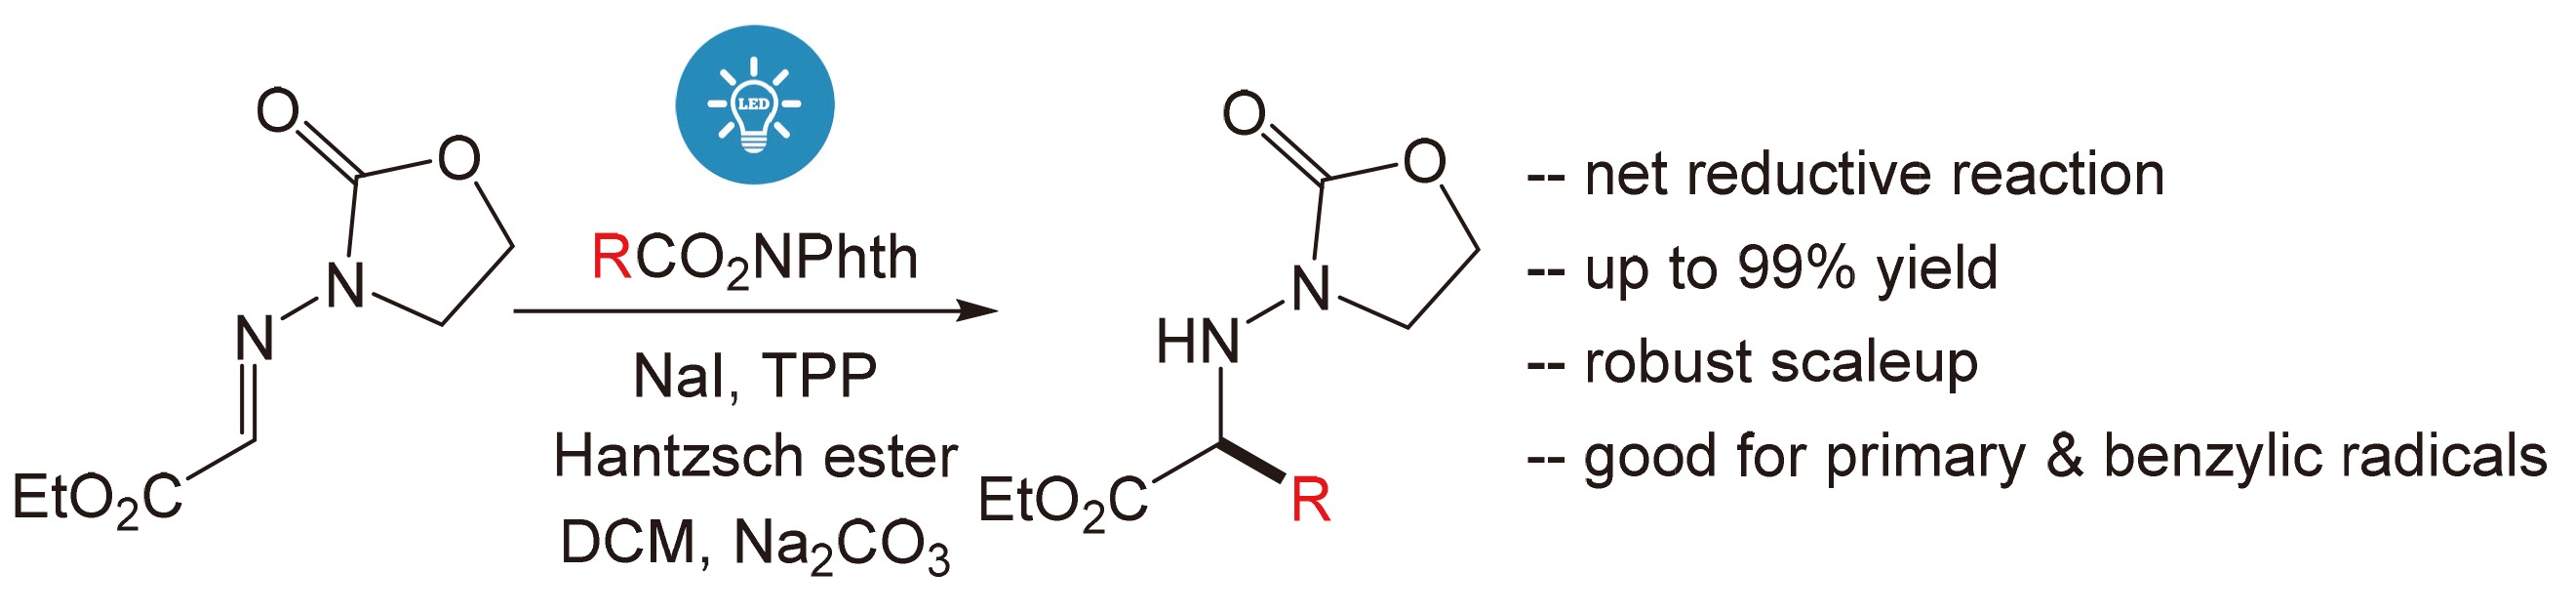 Sodium Iodide-Triphenylphosphine-Mediated Photoredox Alkylation of 